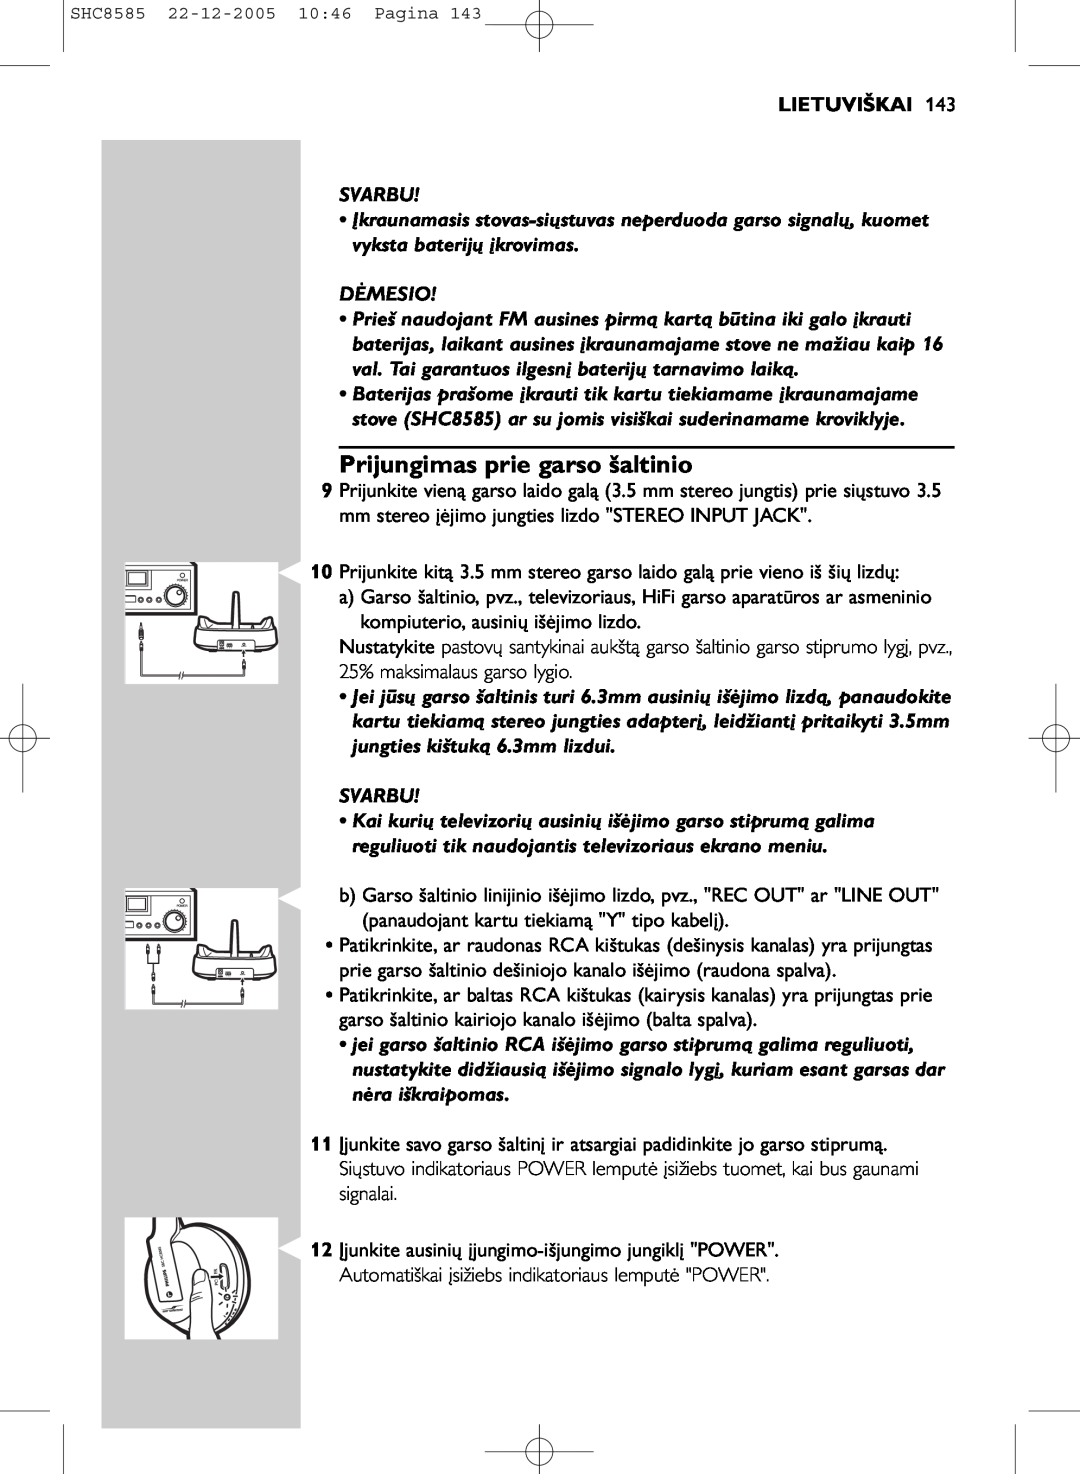 Philips SHC8585/05 manual Prijungimas prie garso šaltinio, Lietuviškai 